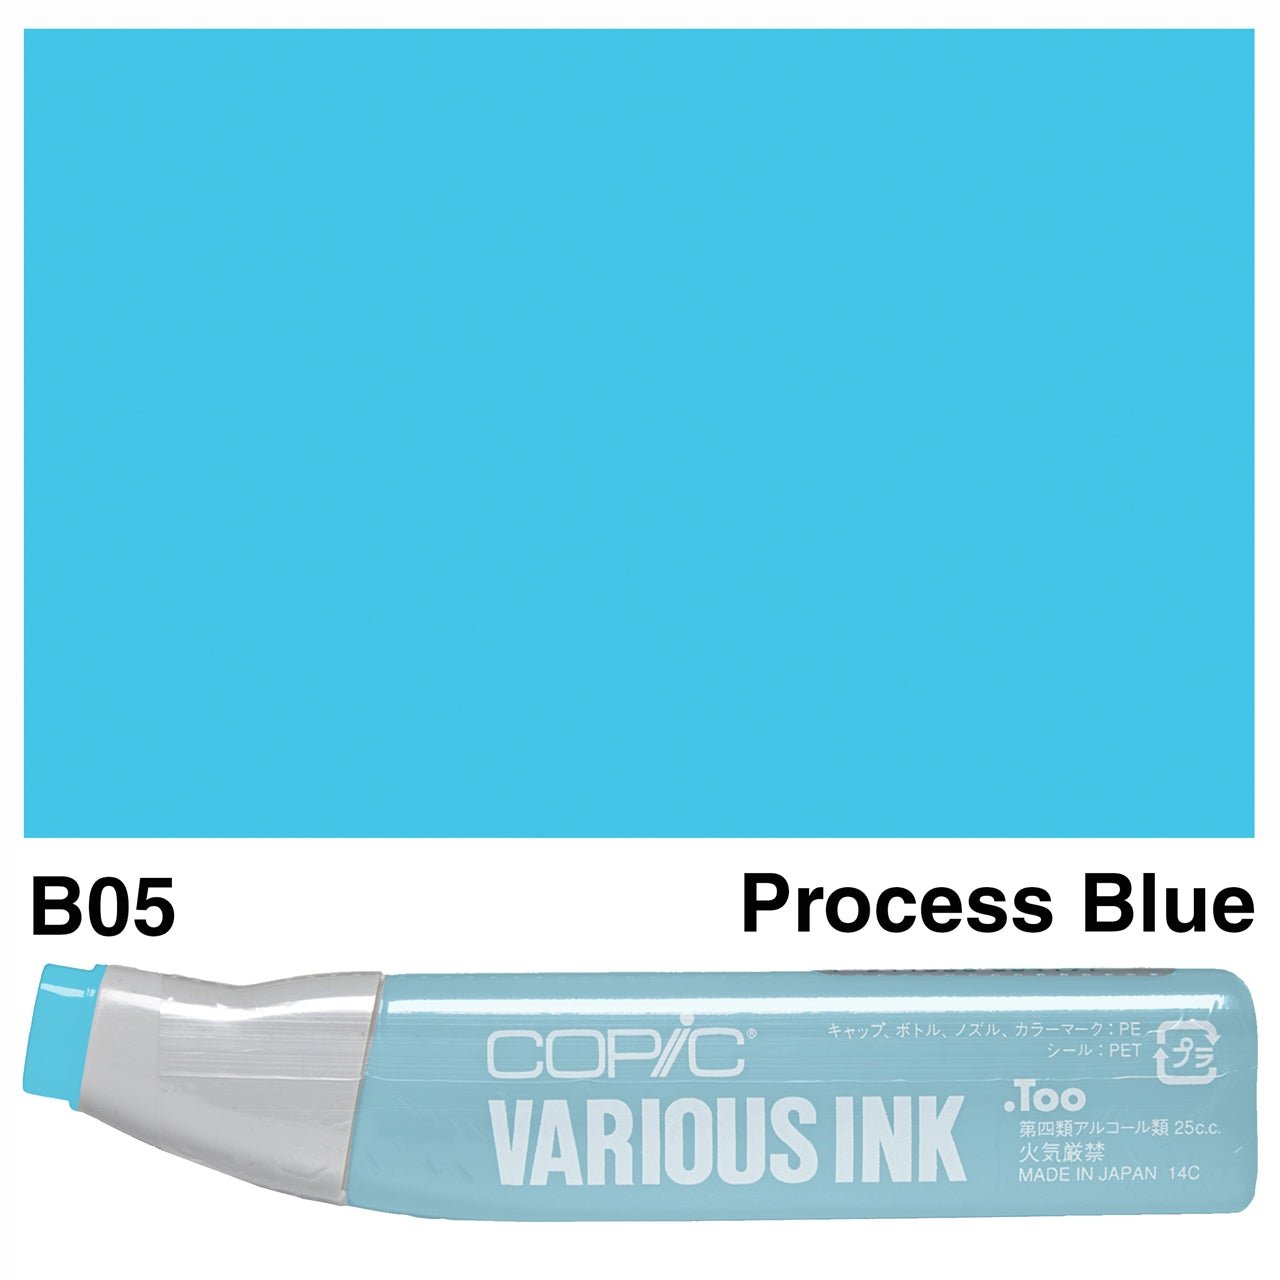 Copic Various Ink B05 Process Blue - theartshop.com.au